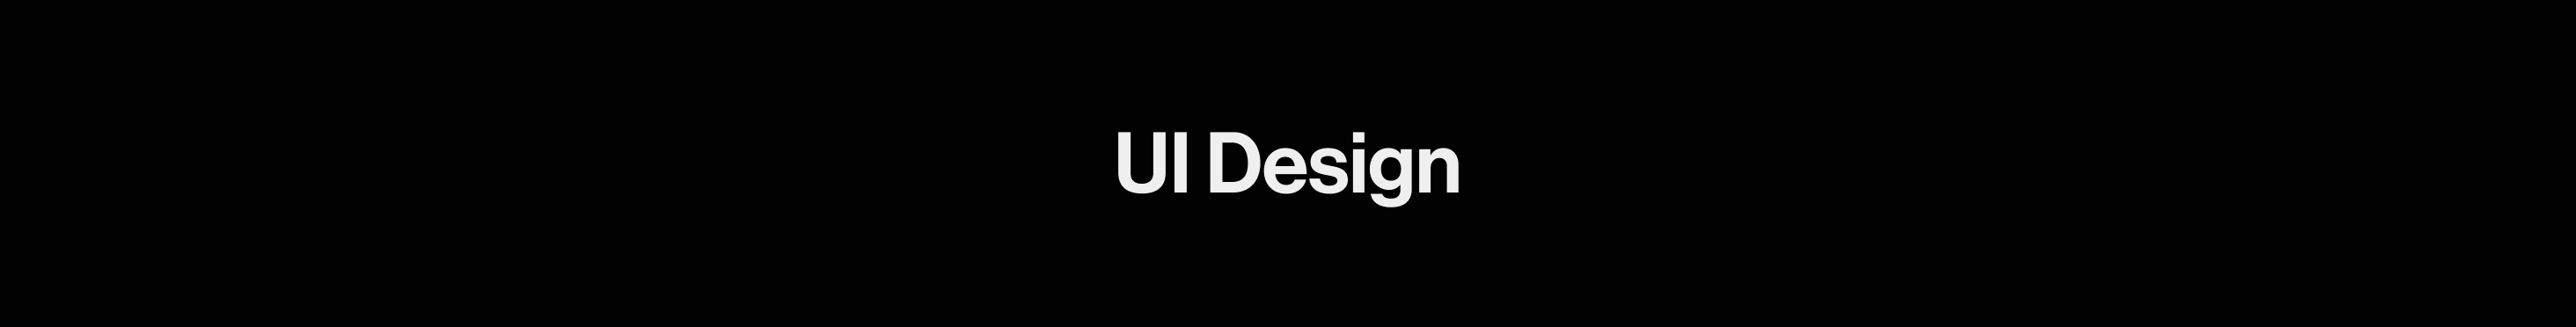 UI design heading.